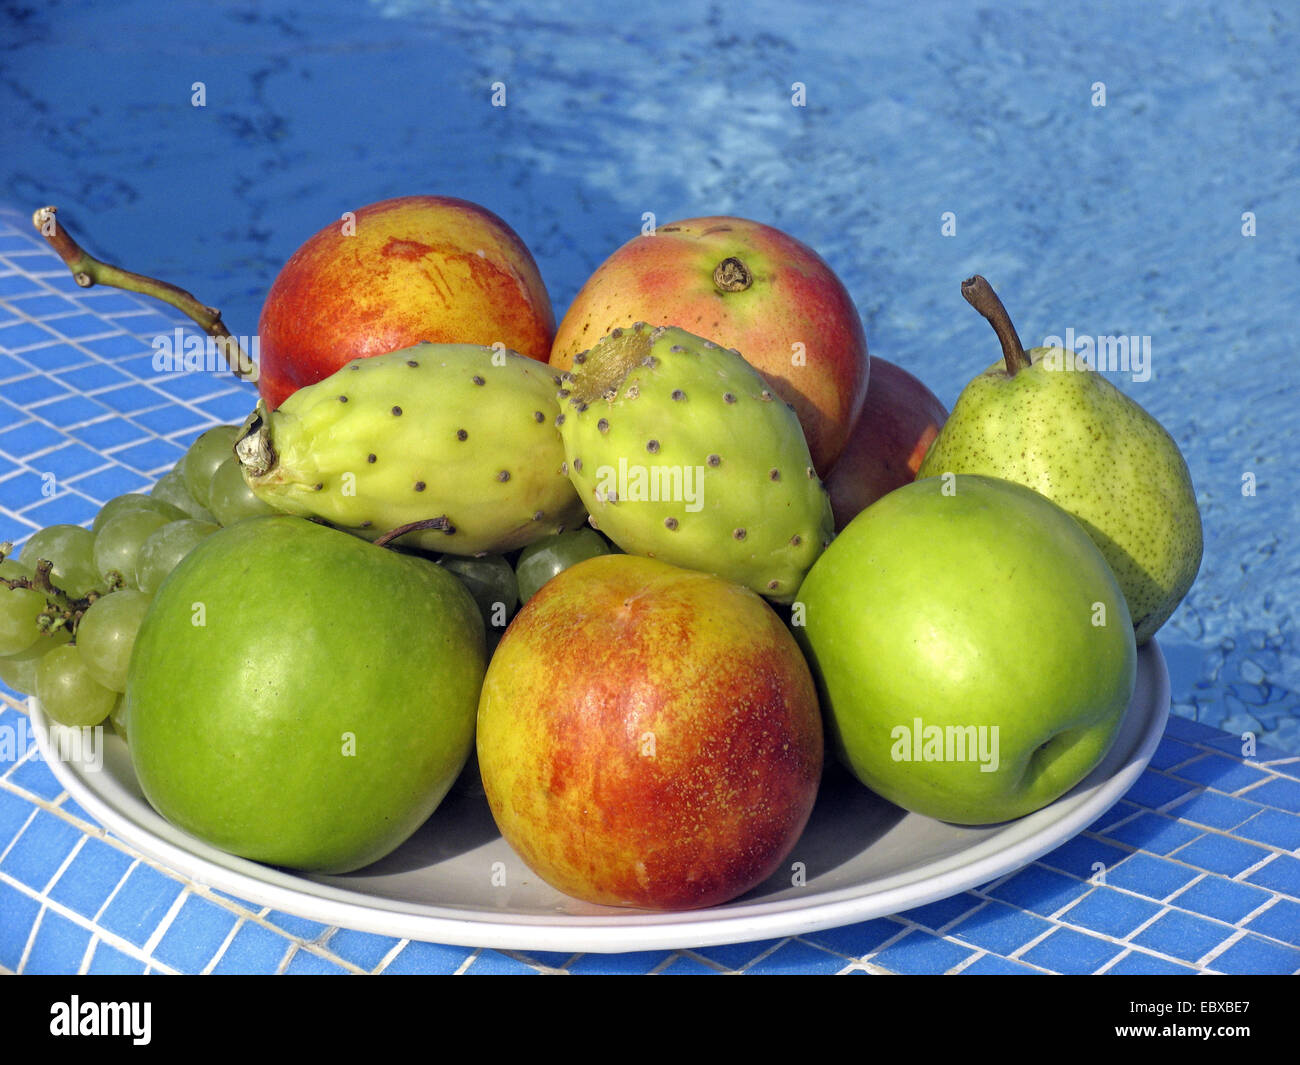 Frutta (mele, pere, uve e fichidindia) sulla piastra per la piscina Foto Stock